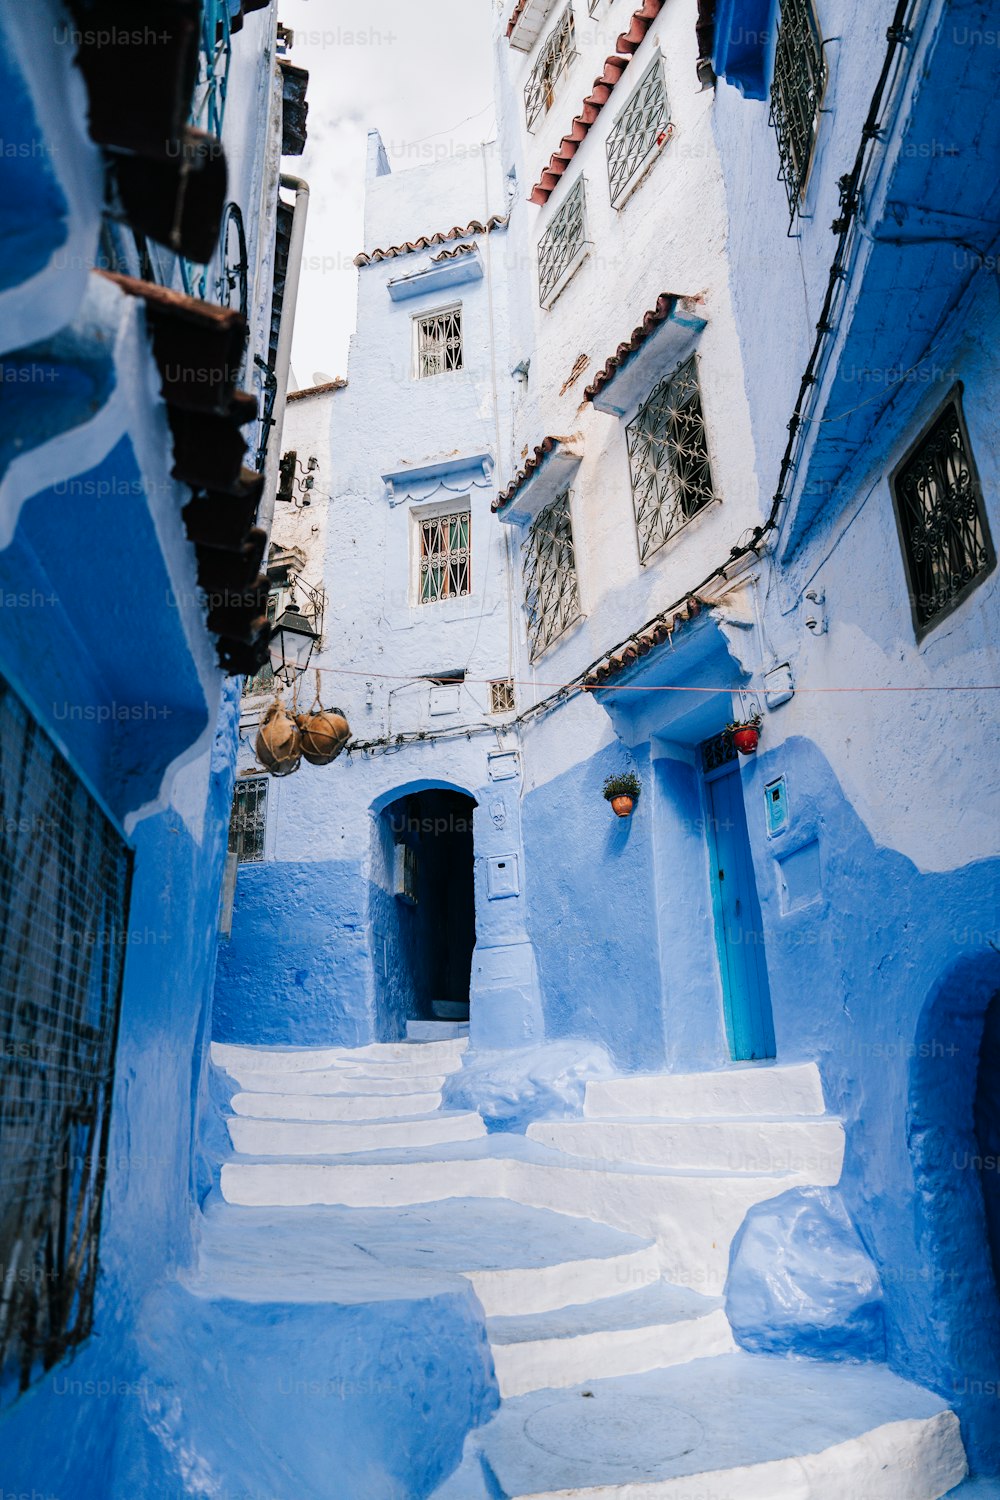 파란 건물과 계단이 있는 좁은 골목길